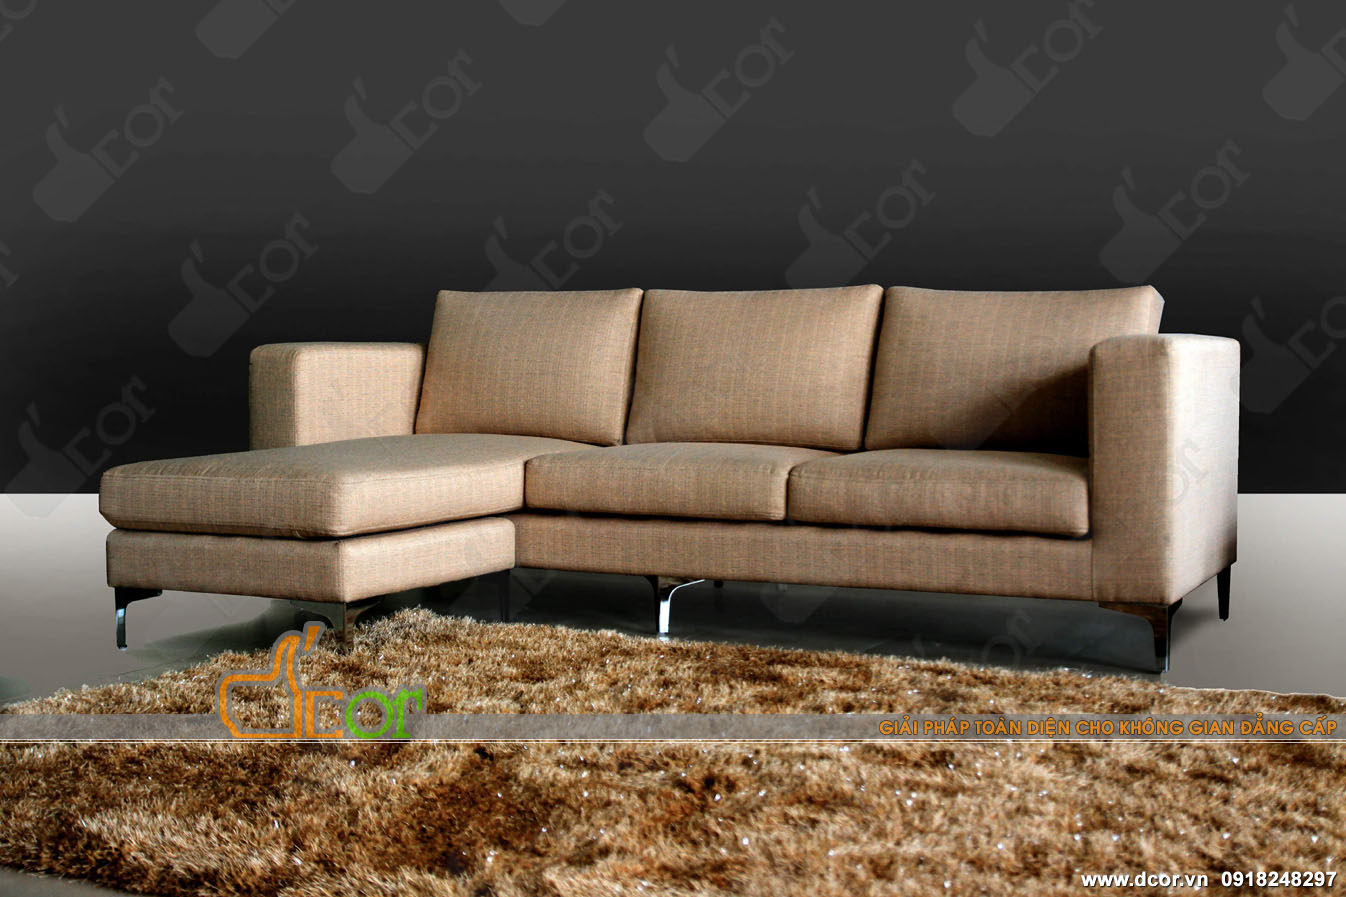 Mẫu ghế sofa vải nỉ NV314 thiết kế linh hoạt, thông minh làm chao đảo showroom nội thất Vietnamarch > 